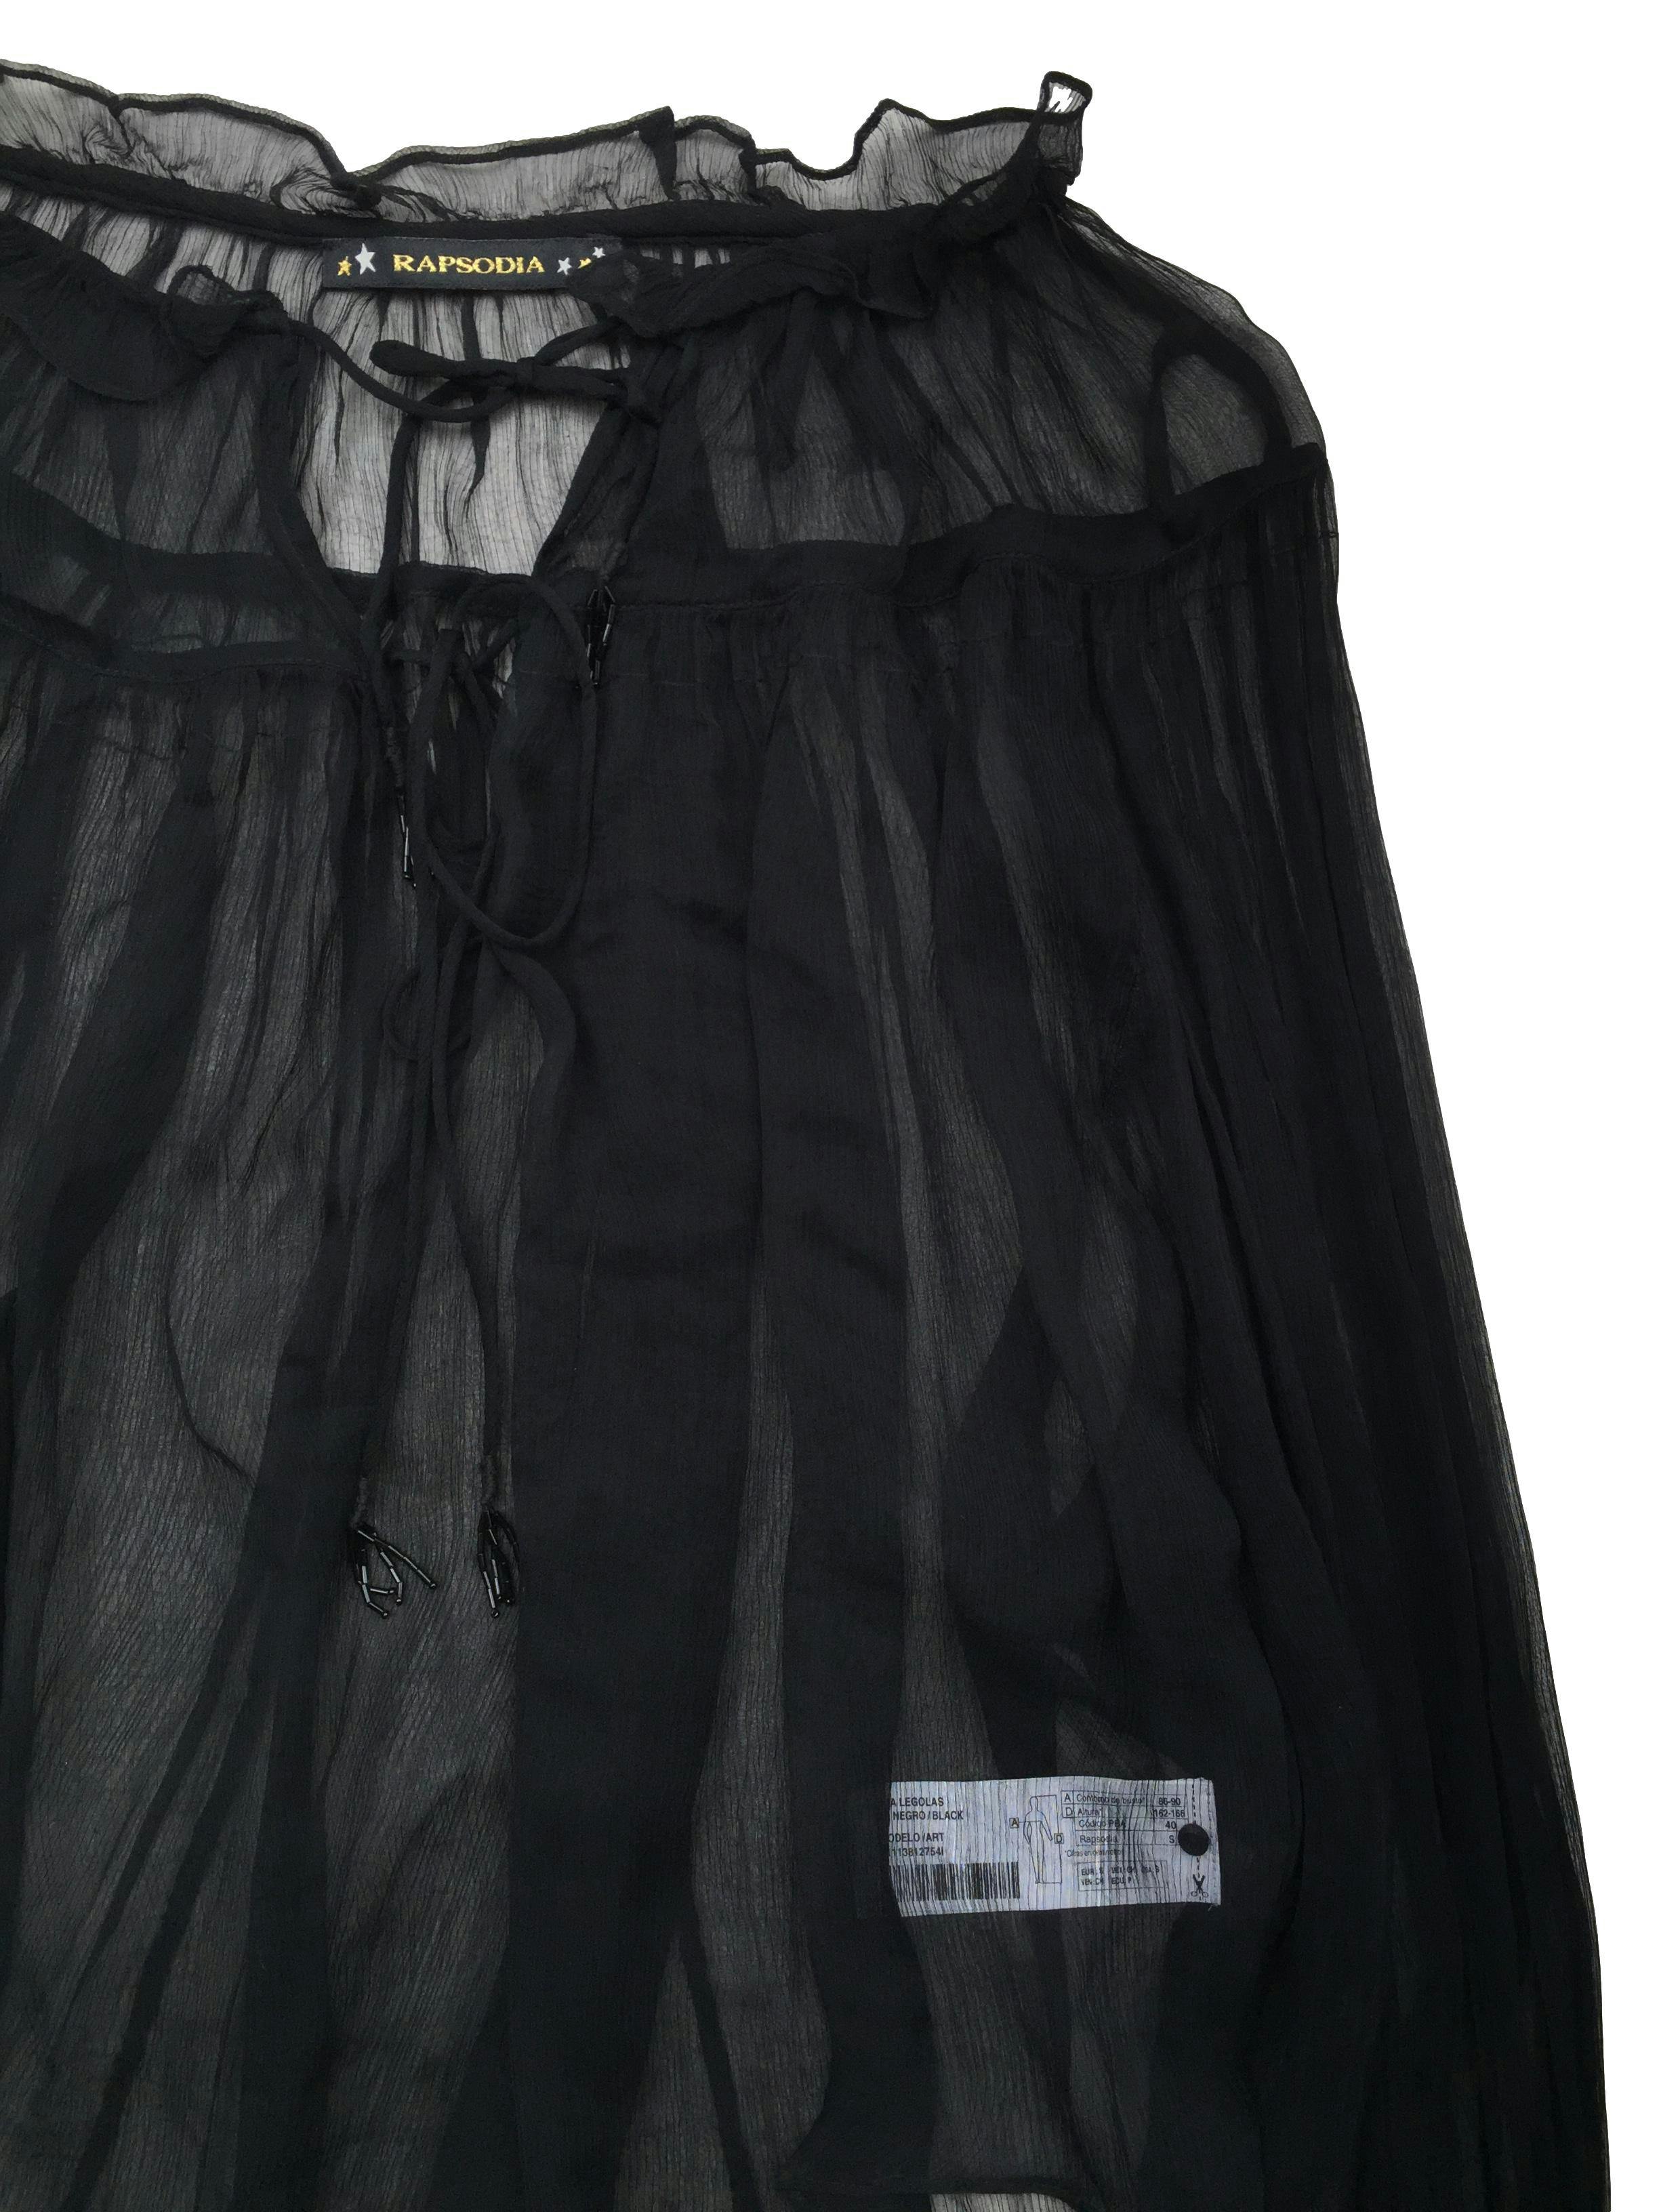 Blusa oversize Rapsodia de gasa negra con escote en V, cintos, mangas ranglán y lentejuelas en puños. Precio original S/400. Busto 150cm, Largo 55cm.